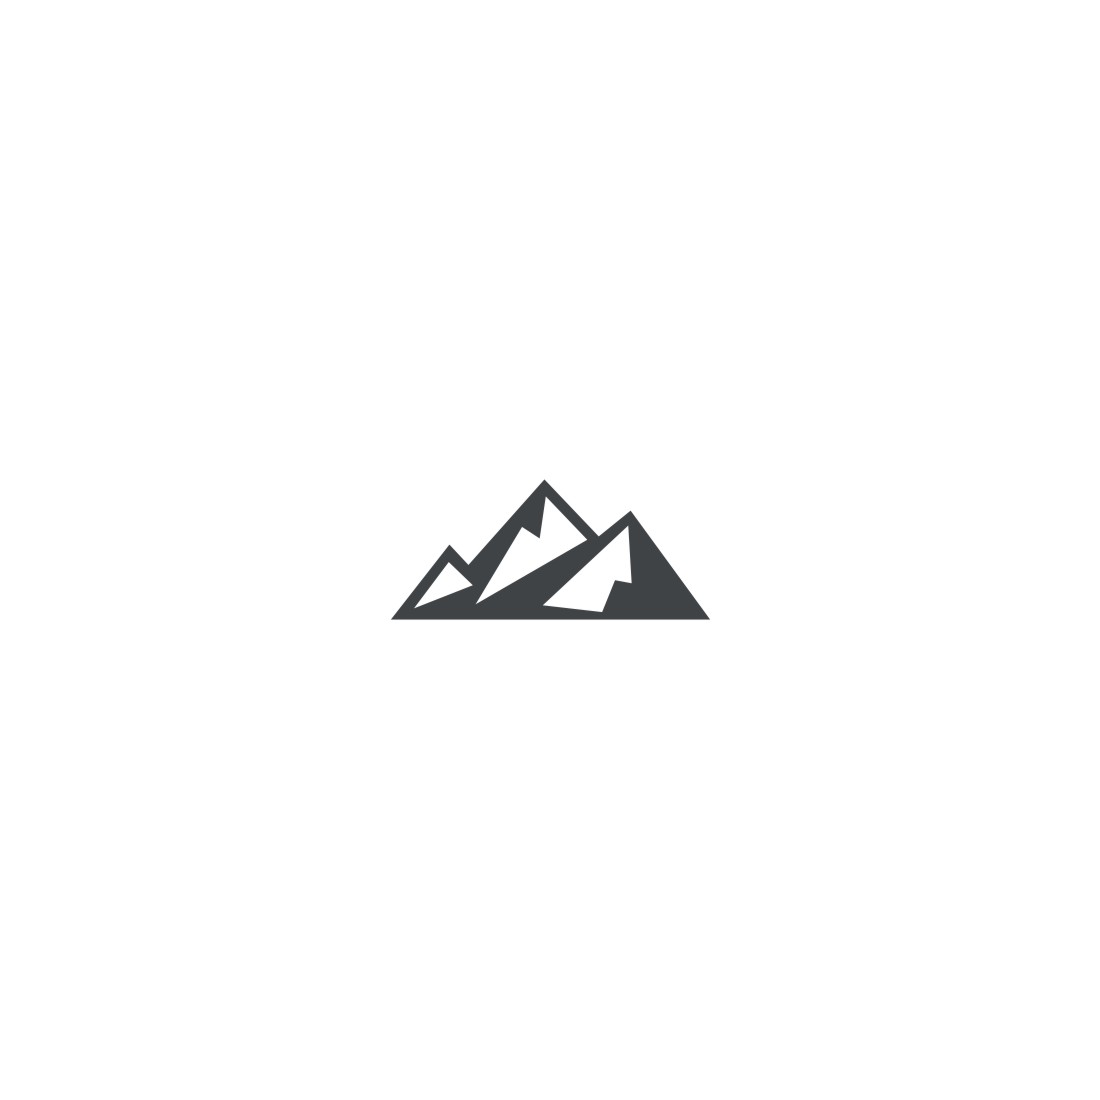 Mountain Logo Set Third Example.